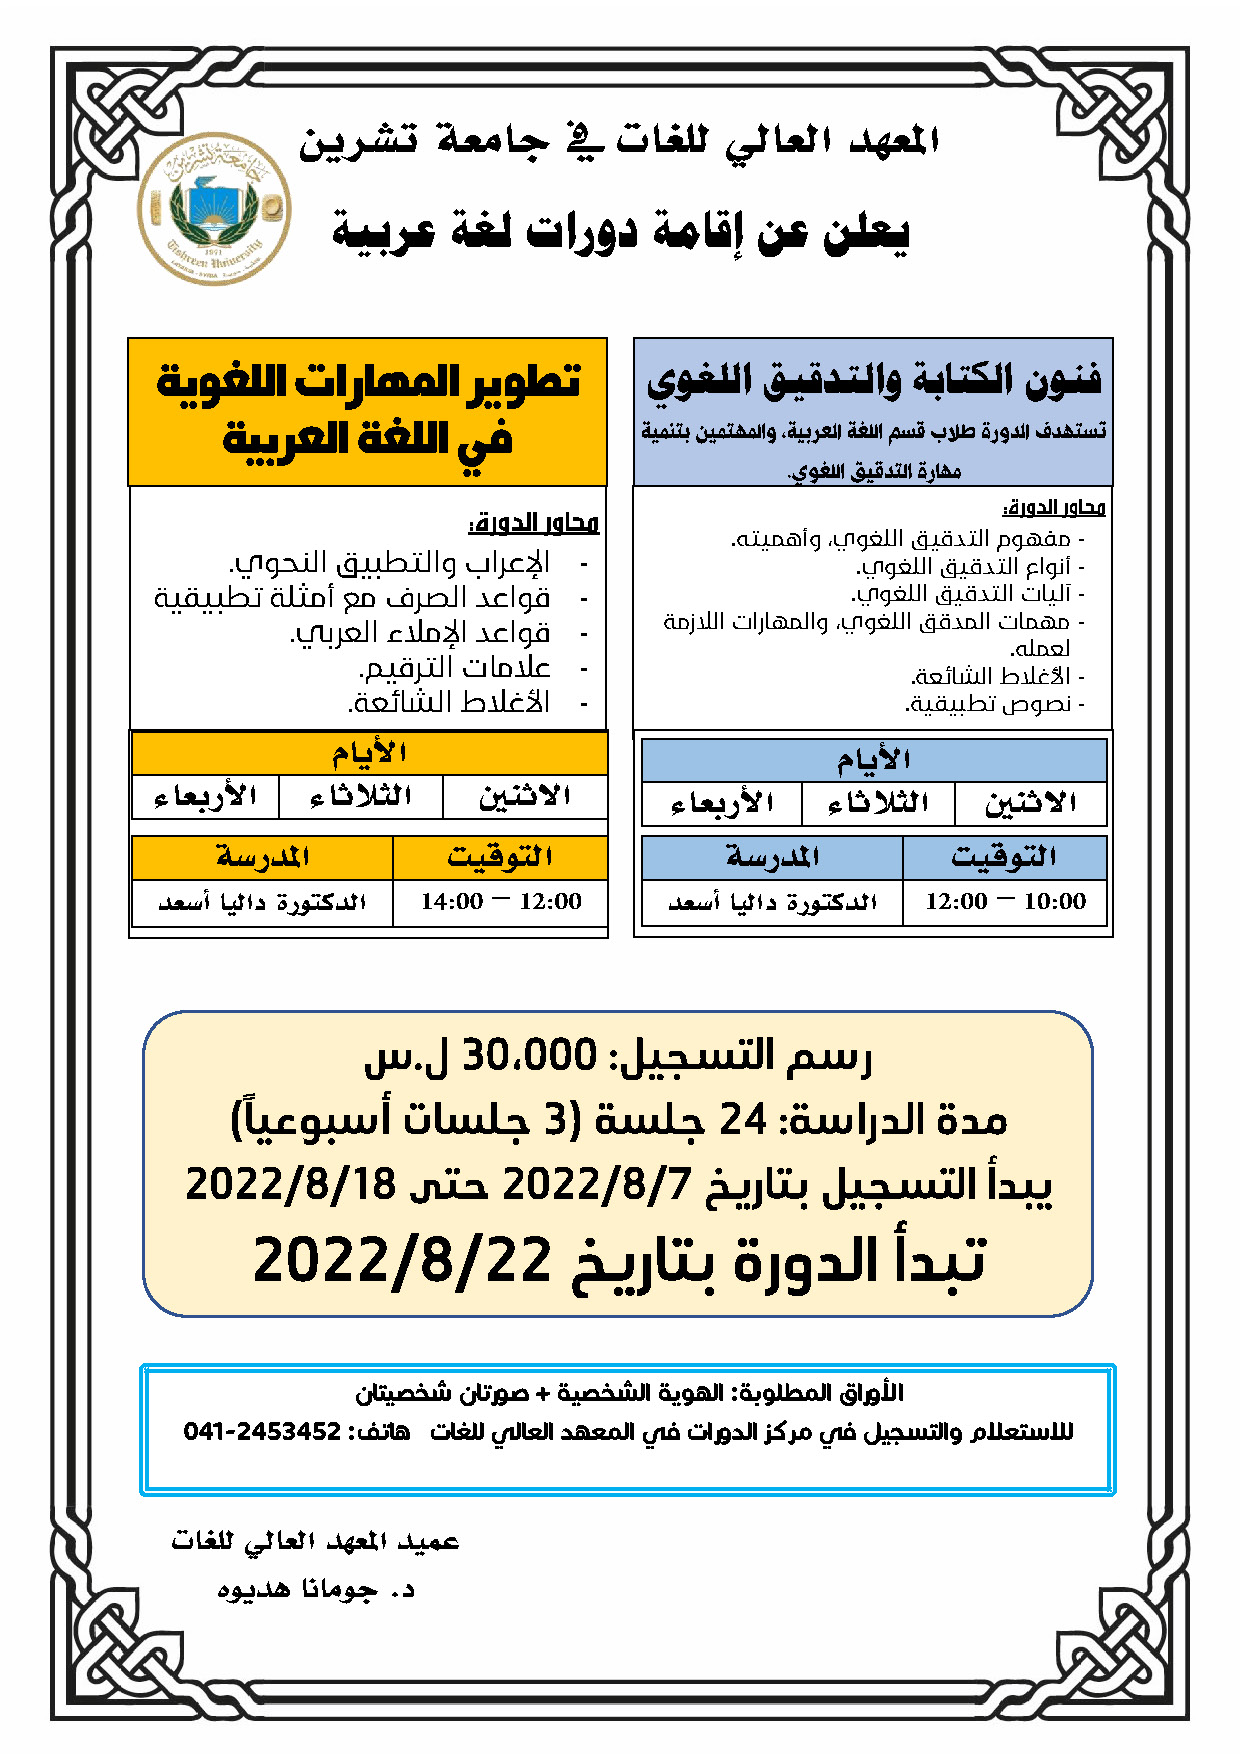 المعهد العالي للغات يعلن عن إقامة دورات في اللغة العربية تبدء بتاريخ 22-08-2022